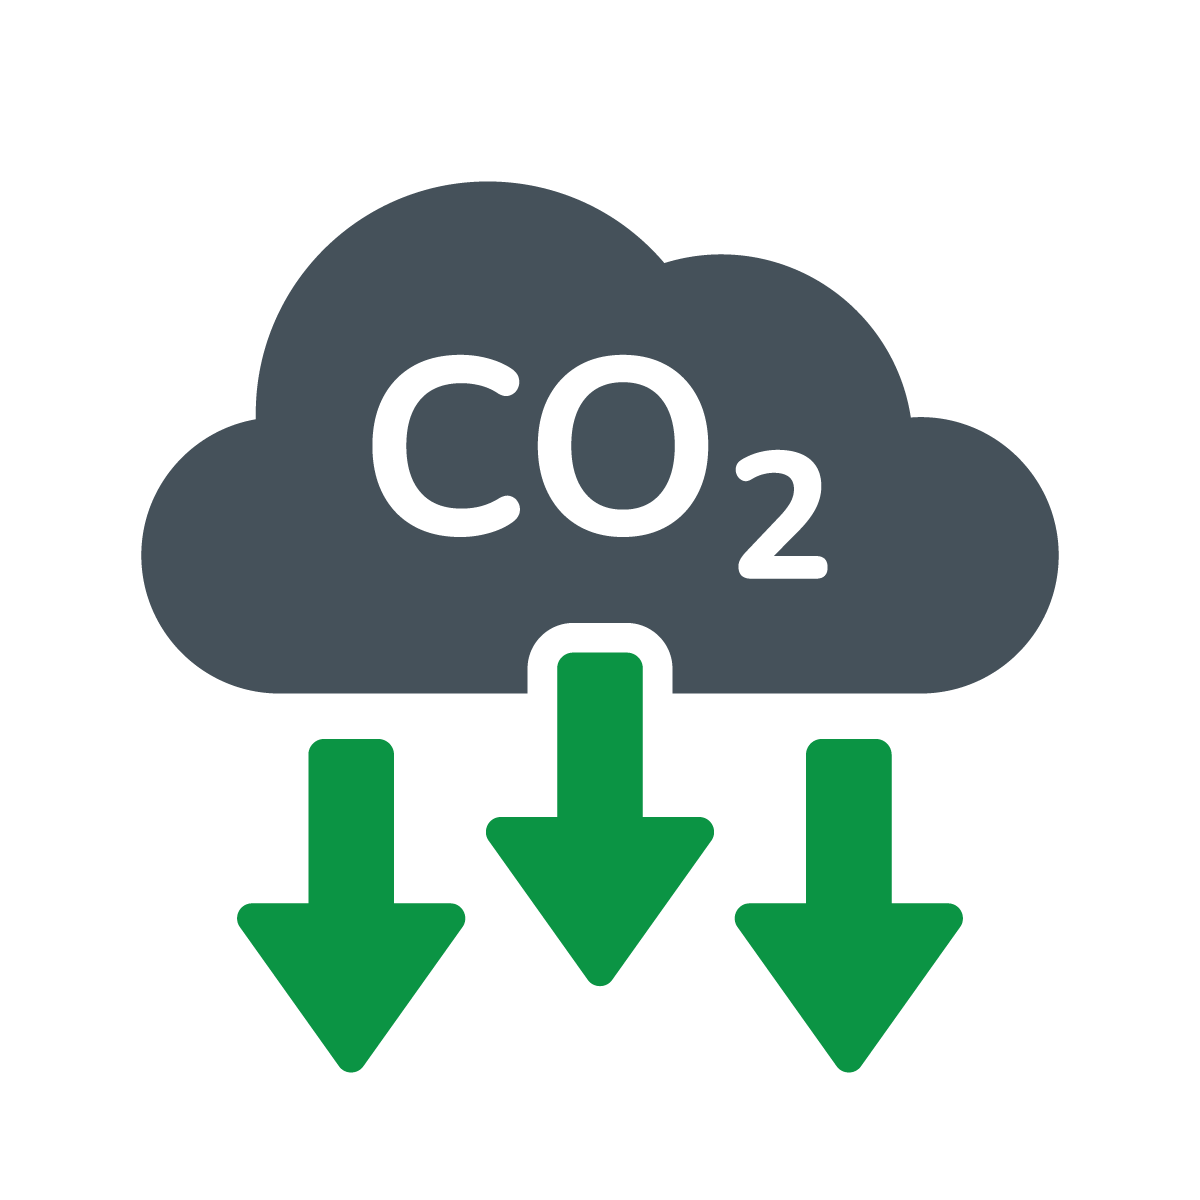 CarbonCaptureReduction_Solutions (31)